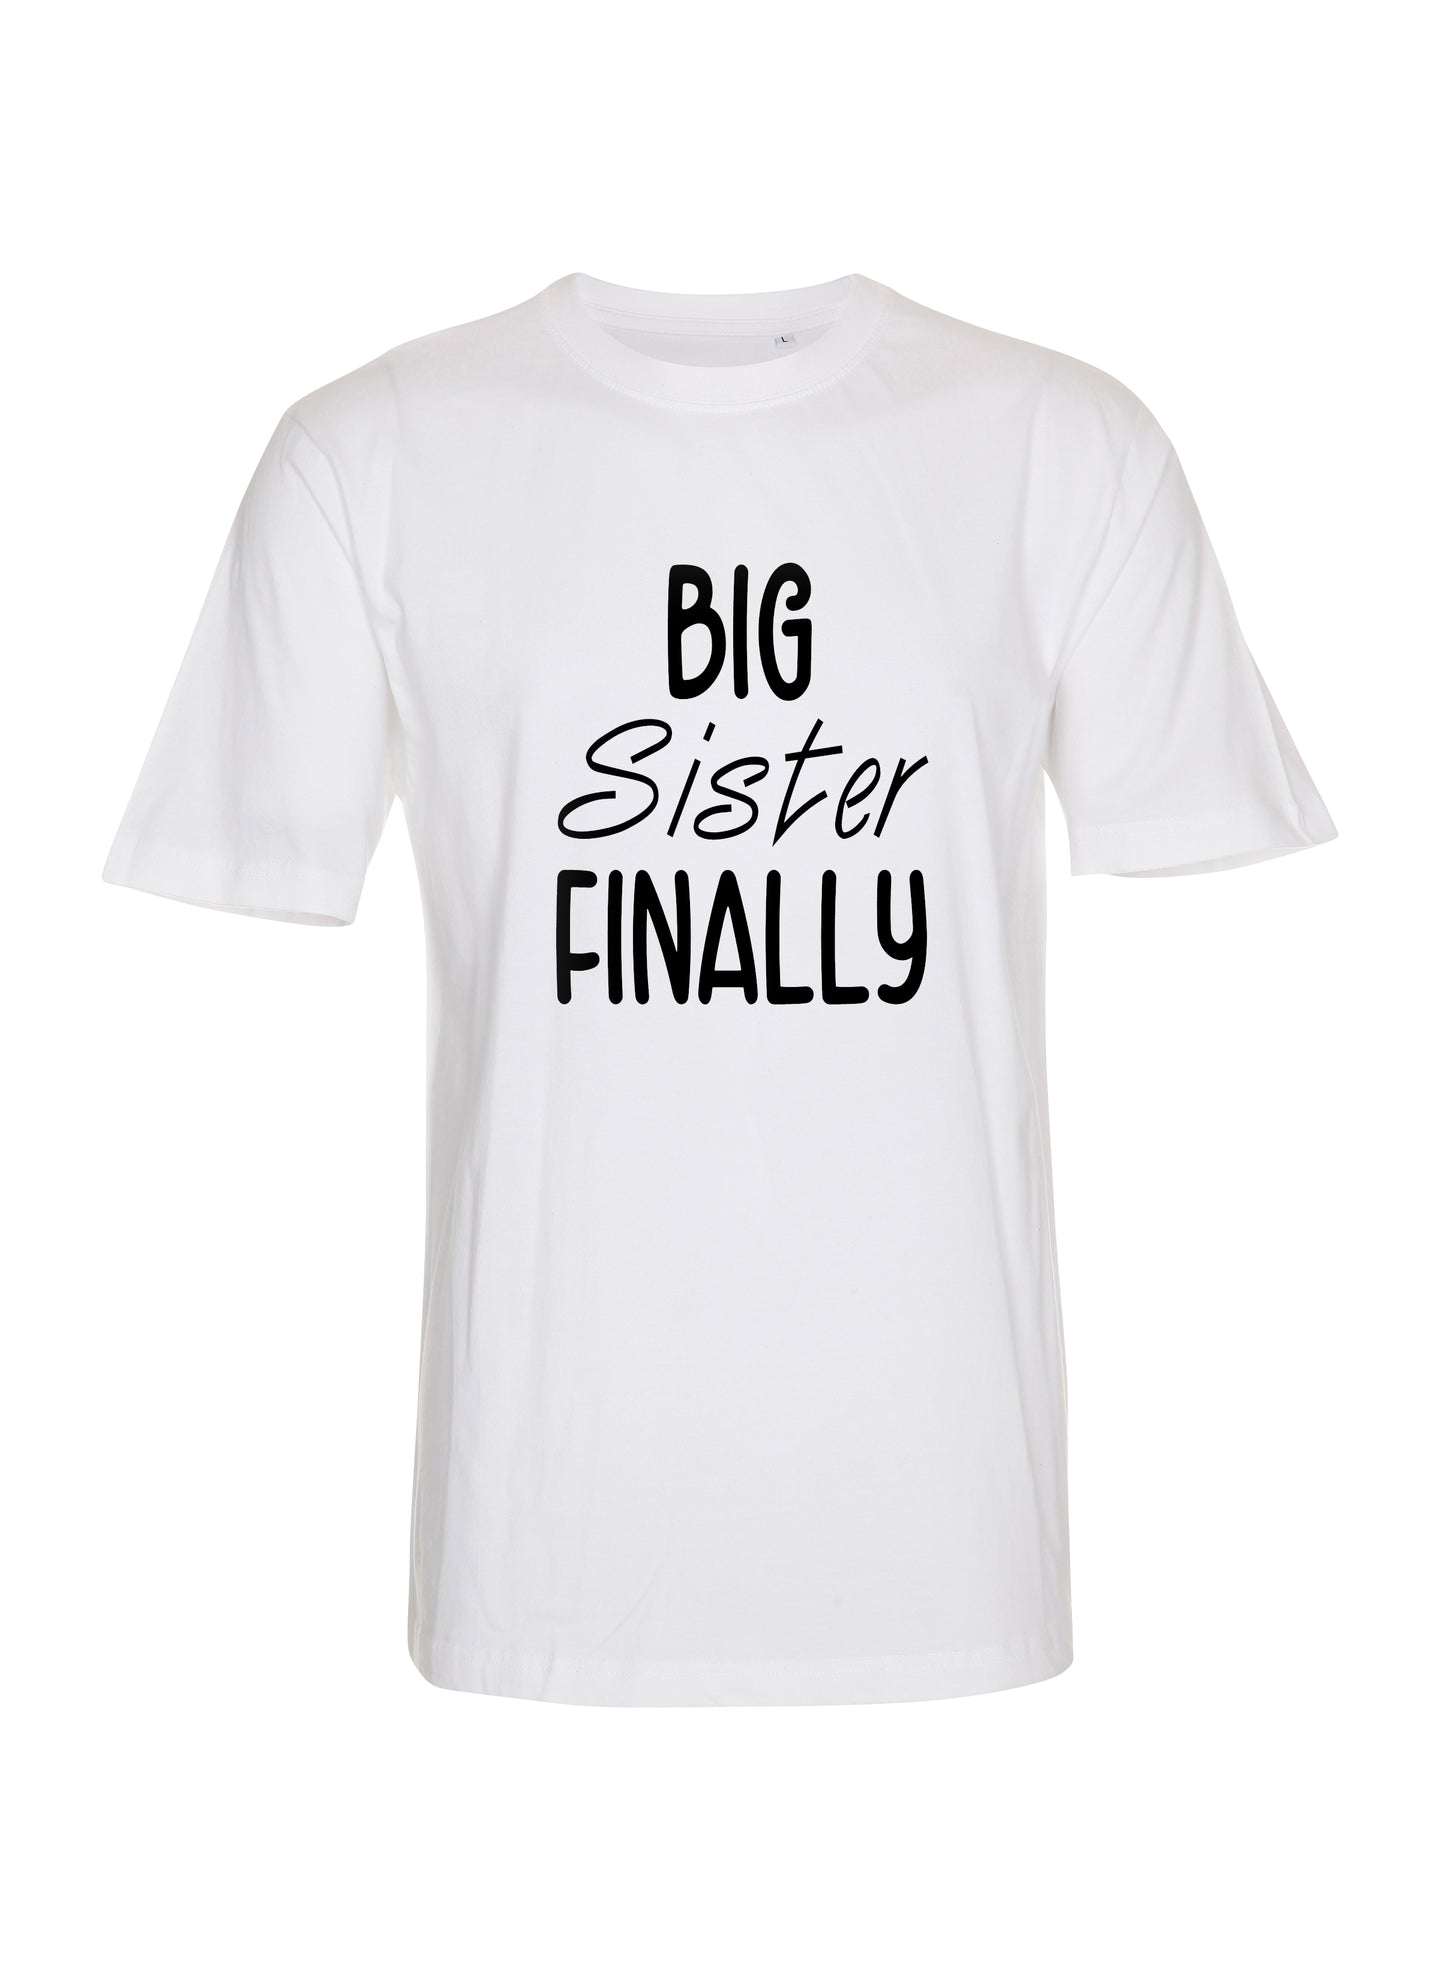 Big sister finally t-shirt